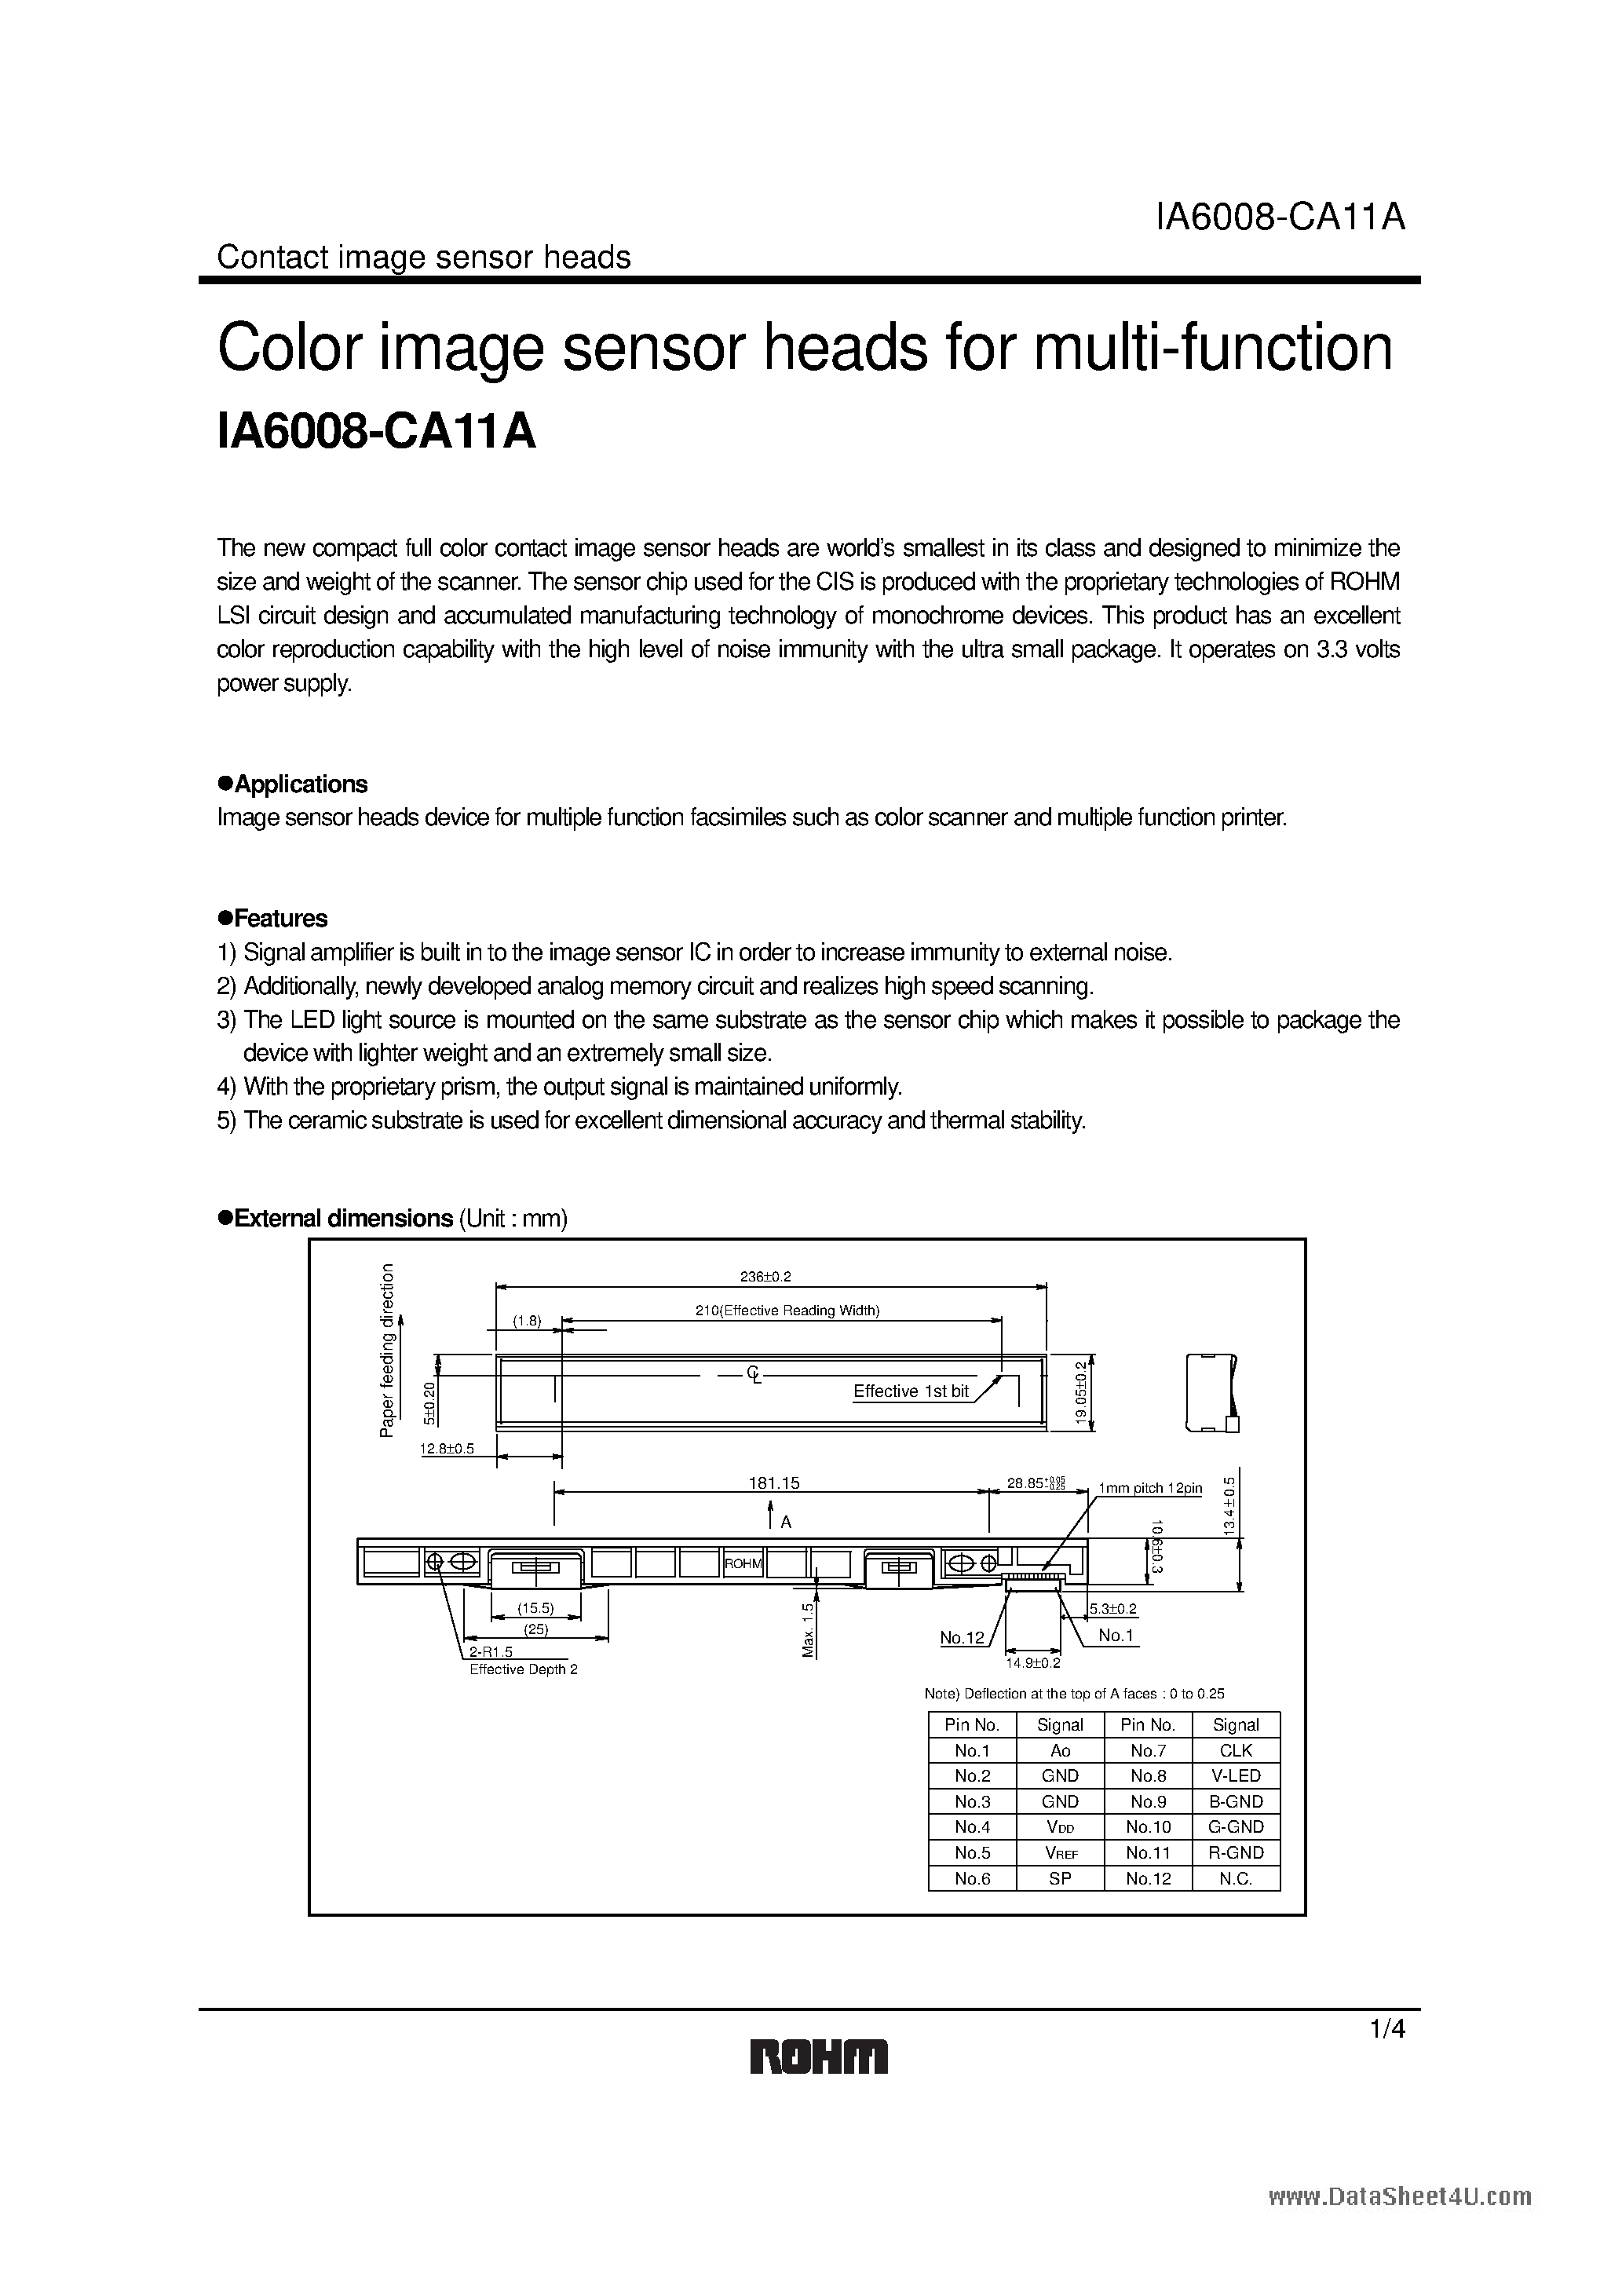 Datasheet IA6008-CA11A - Color image sensor heads page 1